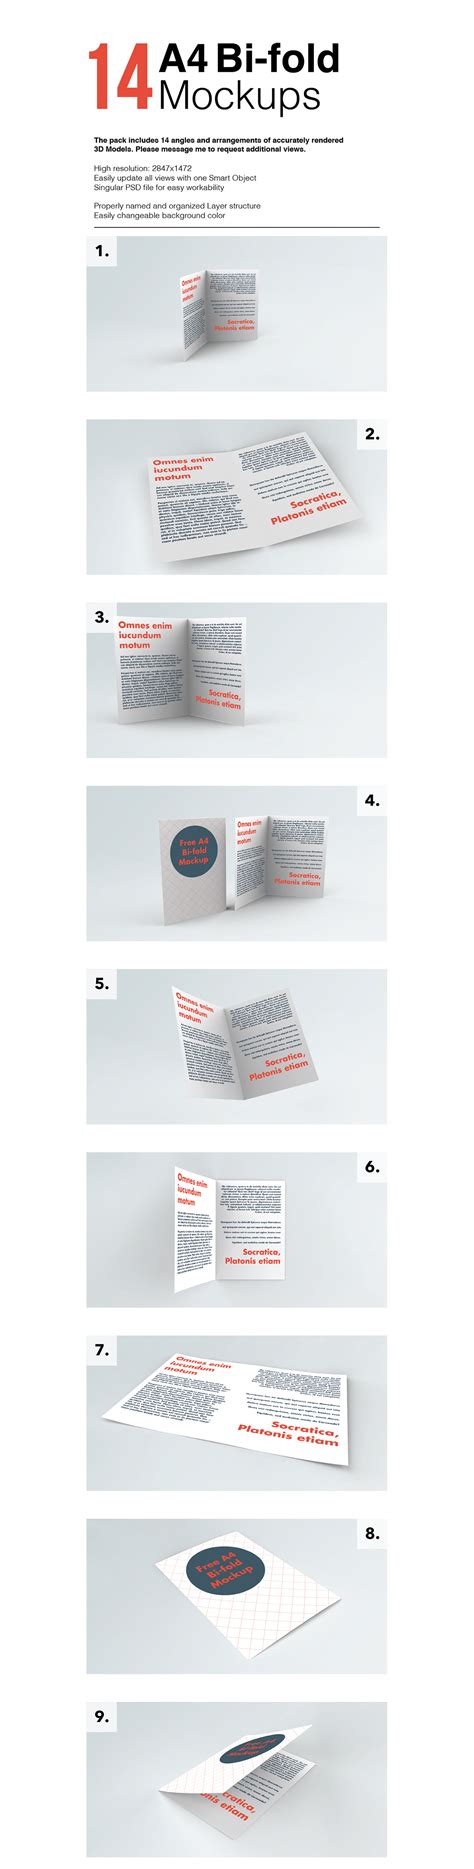 bi fold brochure mockup   styles  mockup zonefree mockup zone